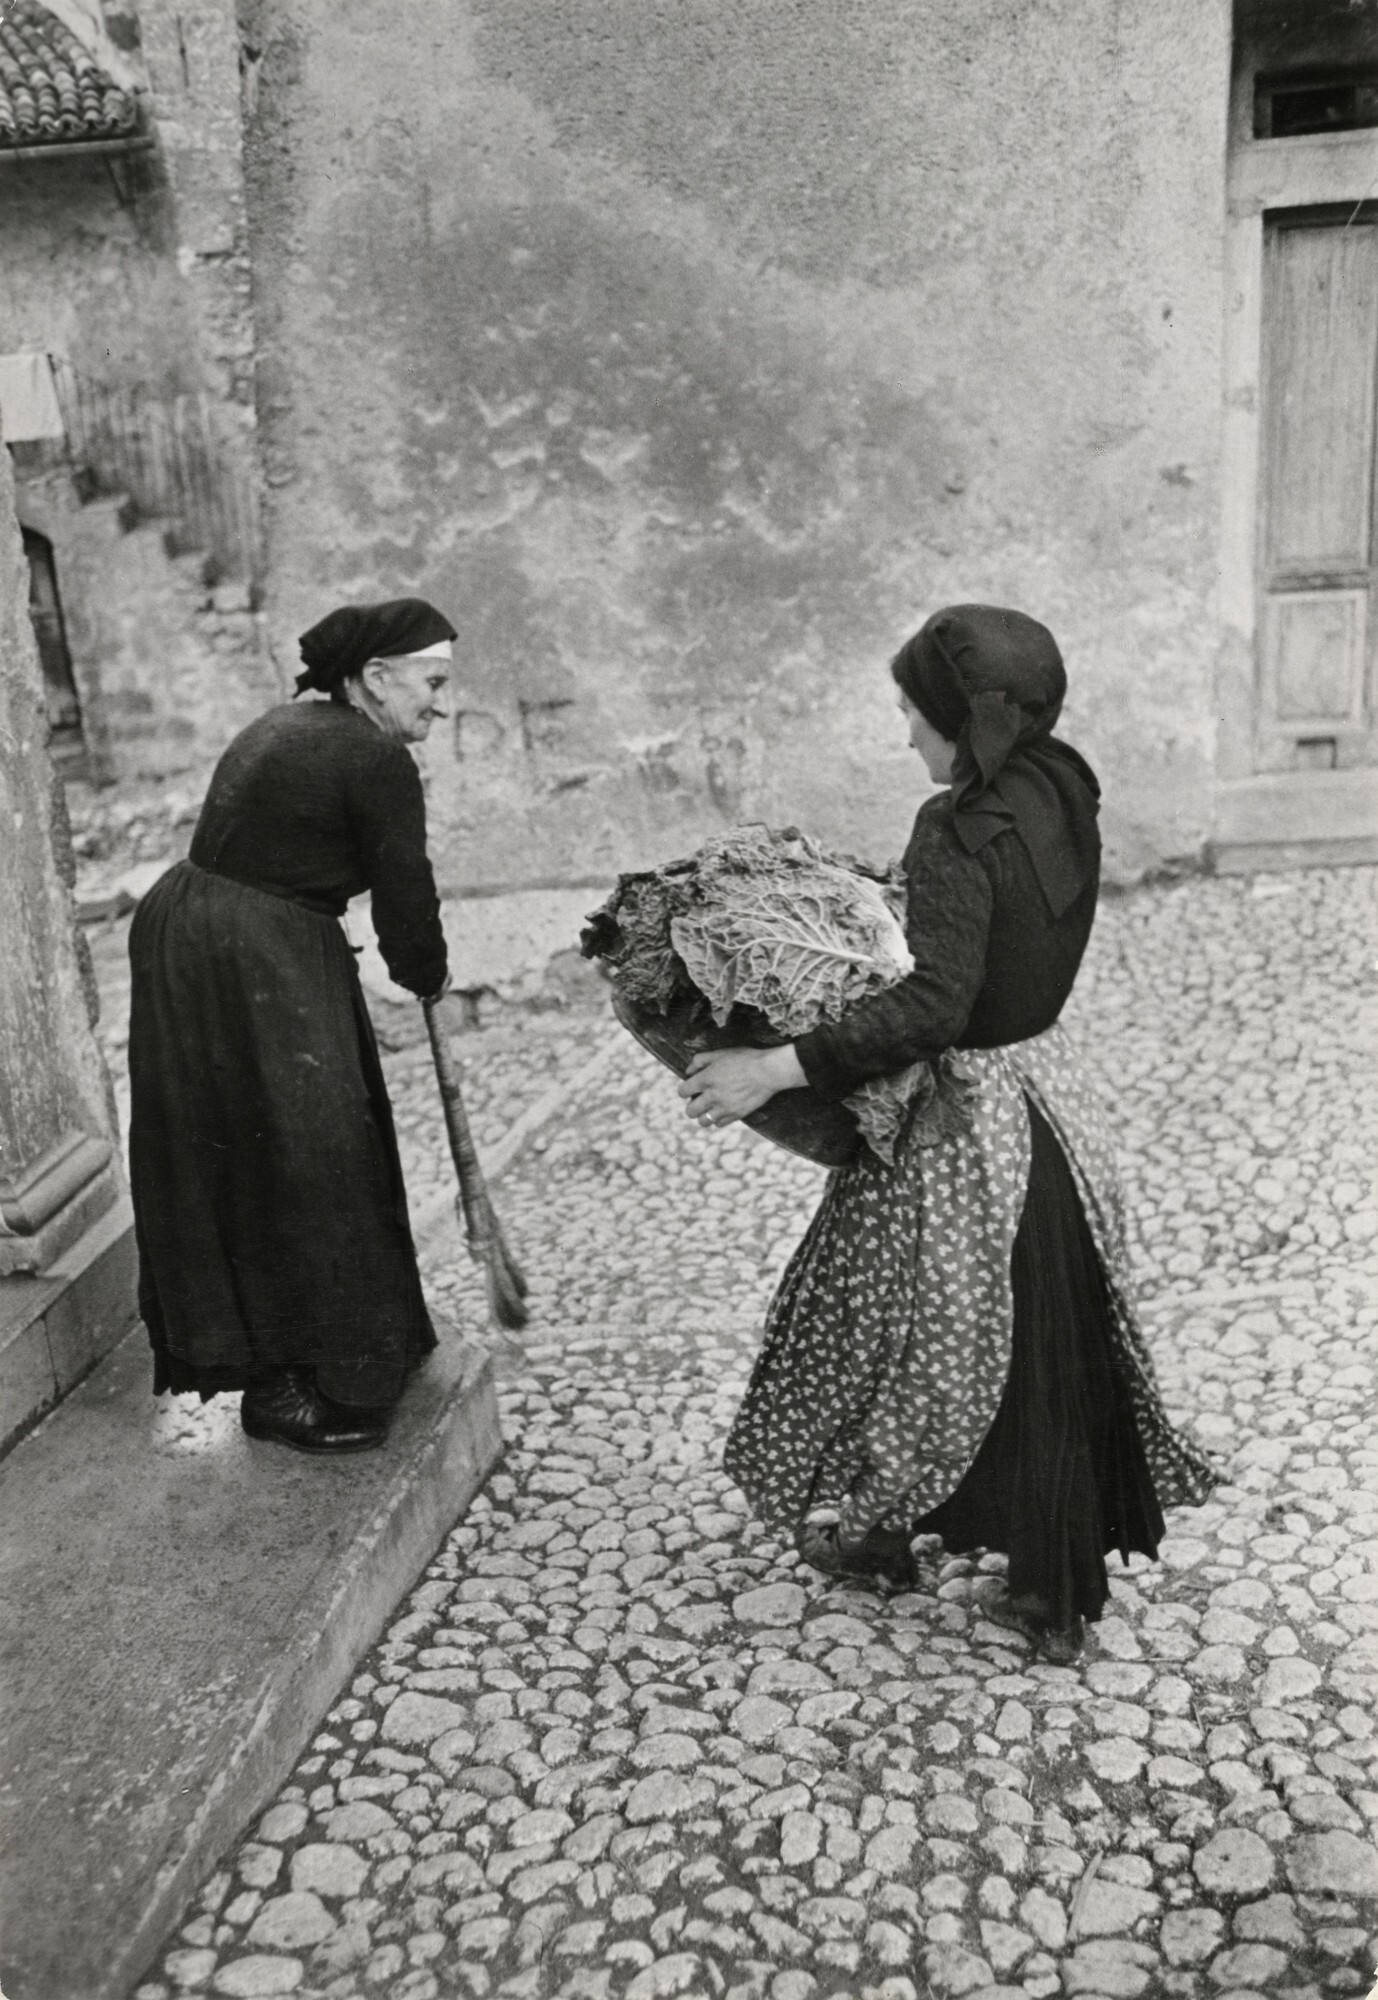 Сканно, Италия, 1951. Фотограф Анри Картье-Брессон